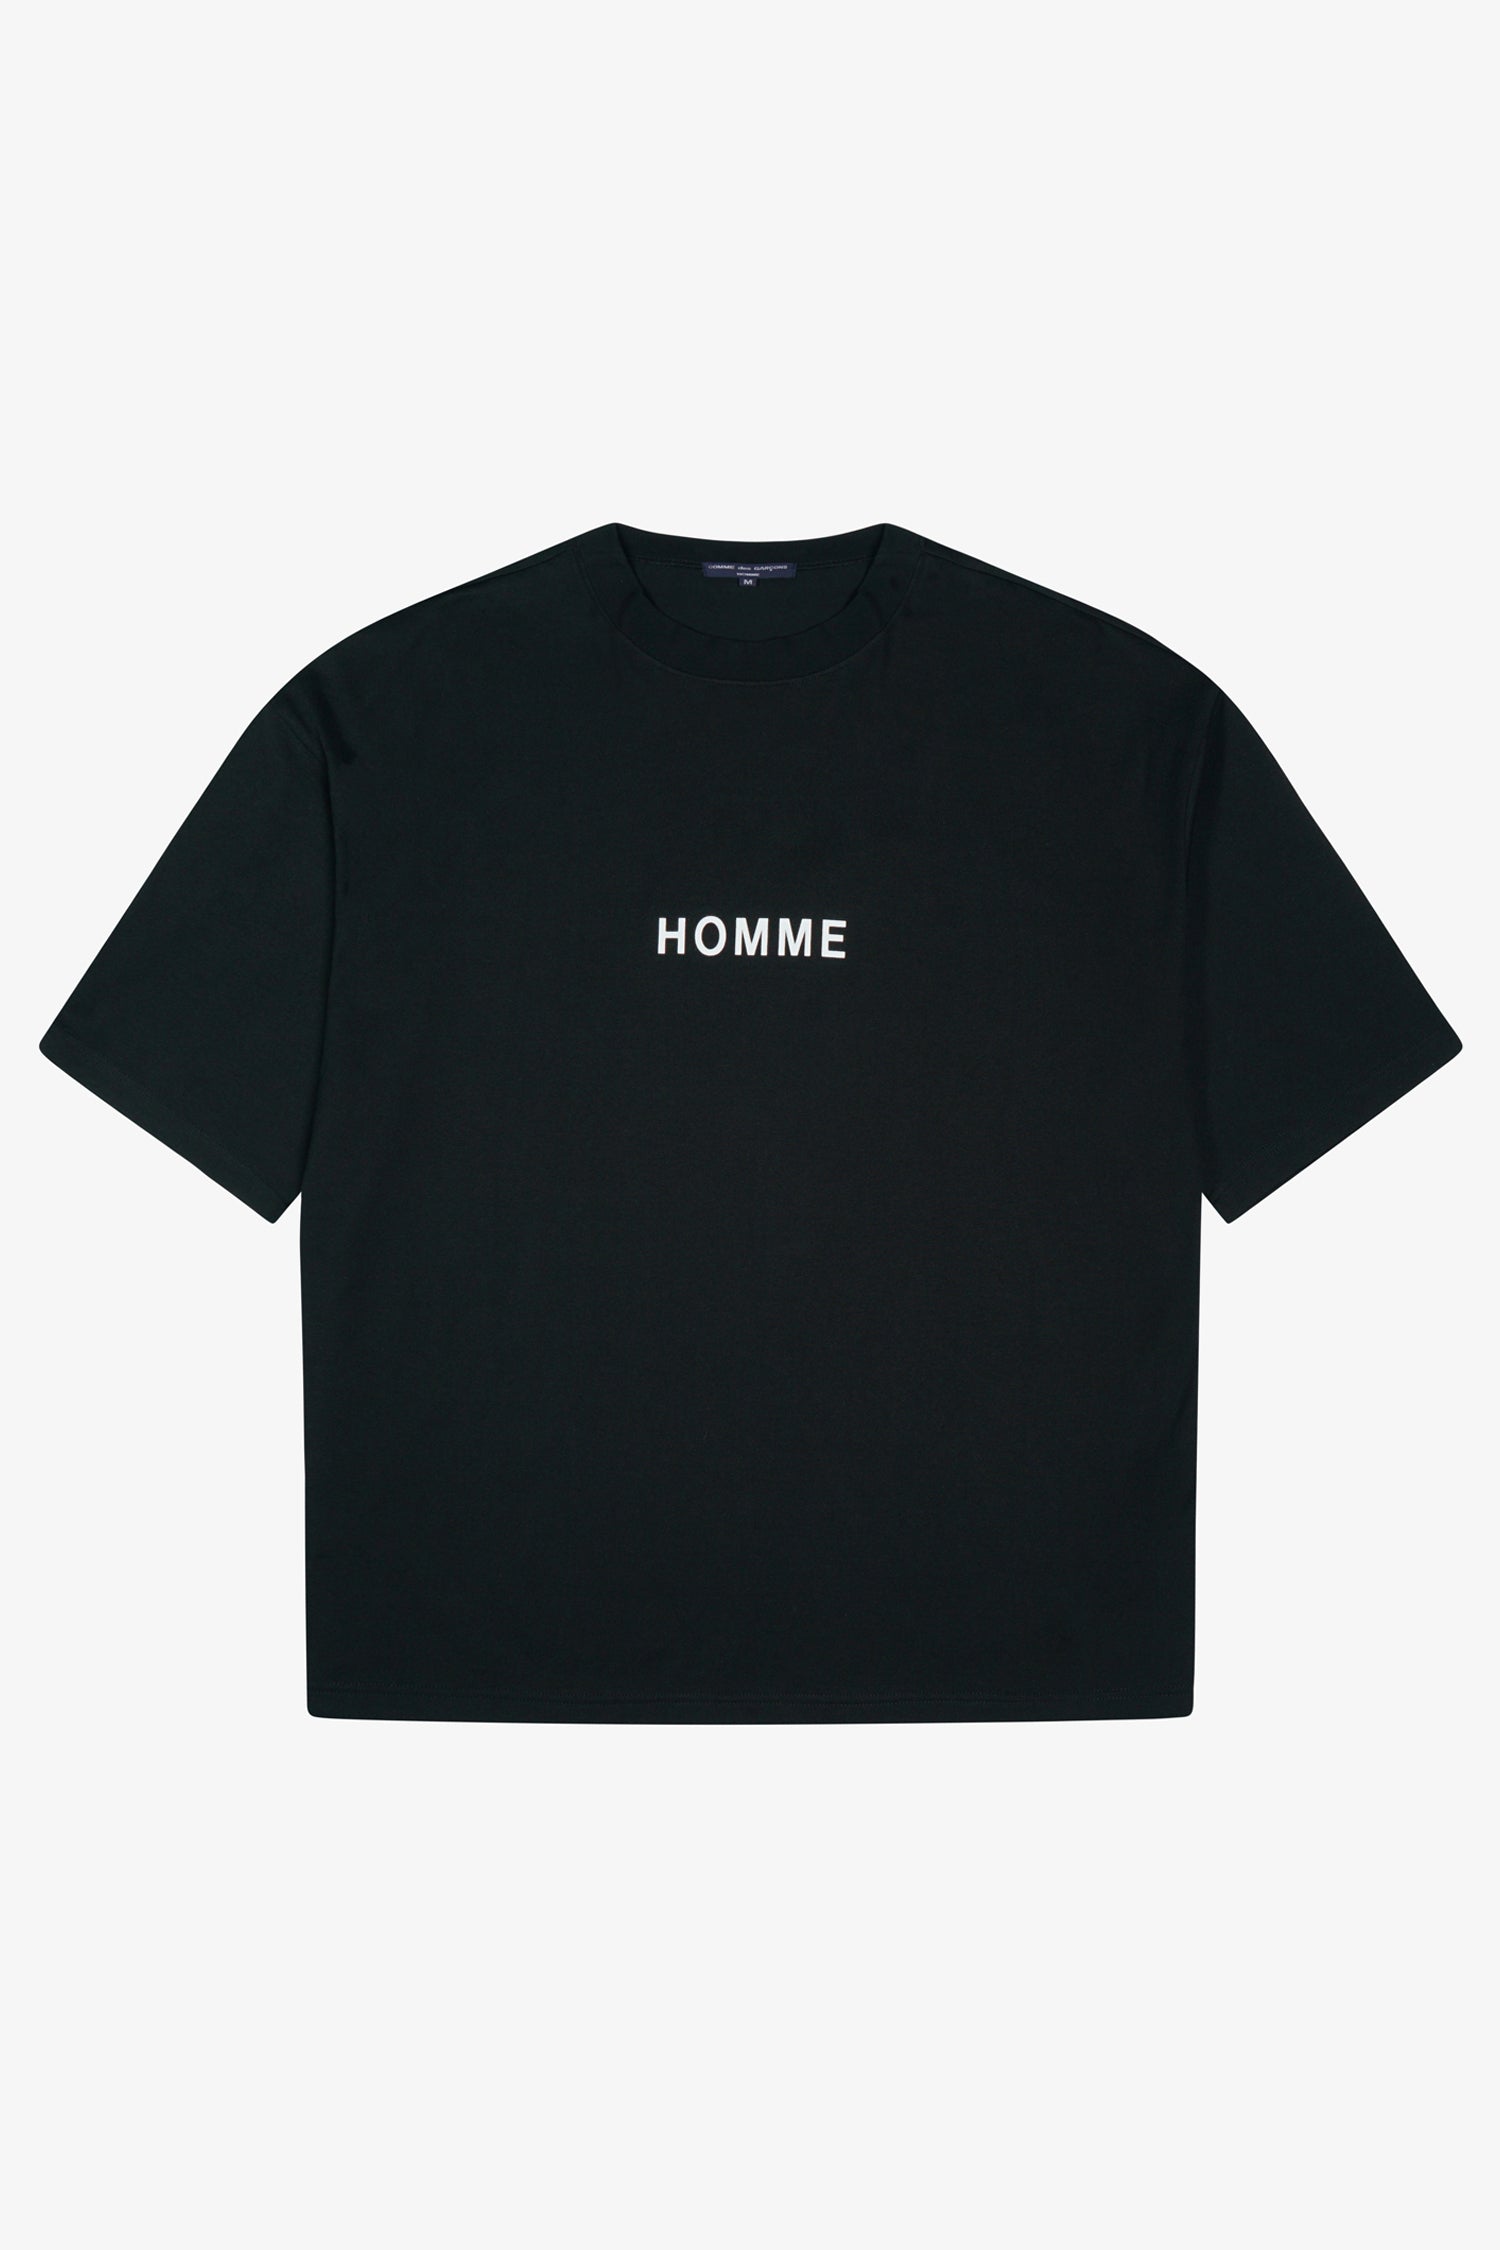 Selectshop FRAME - COMME DES GARÇONS HOMME Box-Cut Logo T-Shirt T-Shirts Dubai